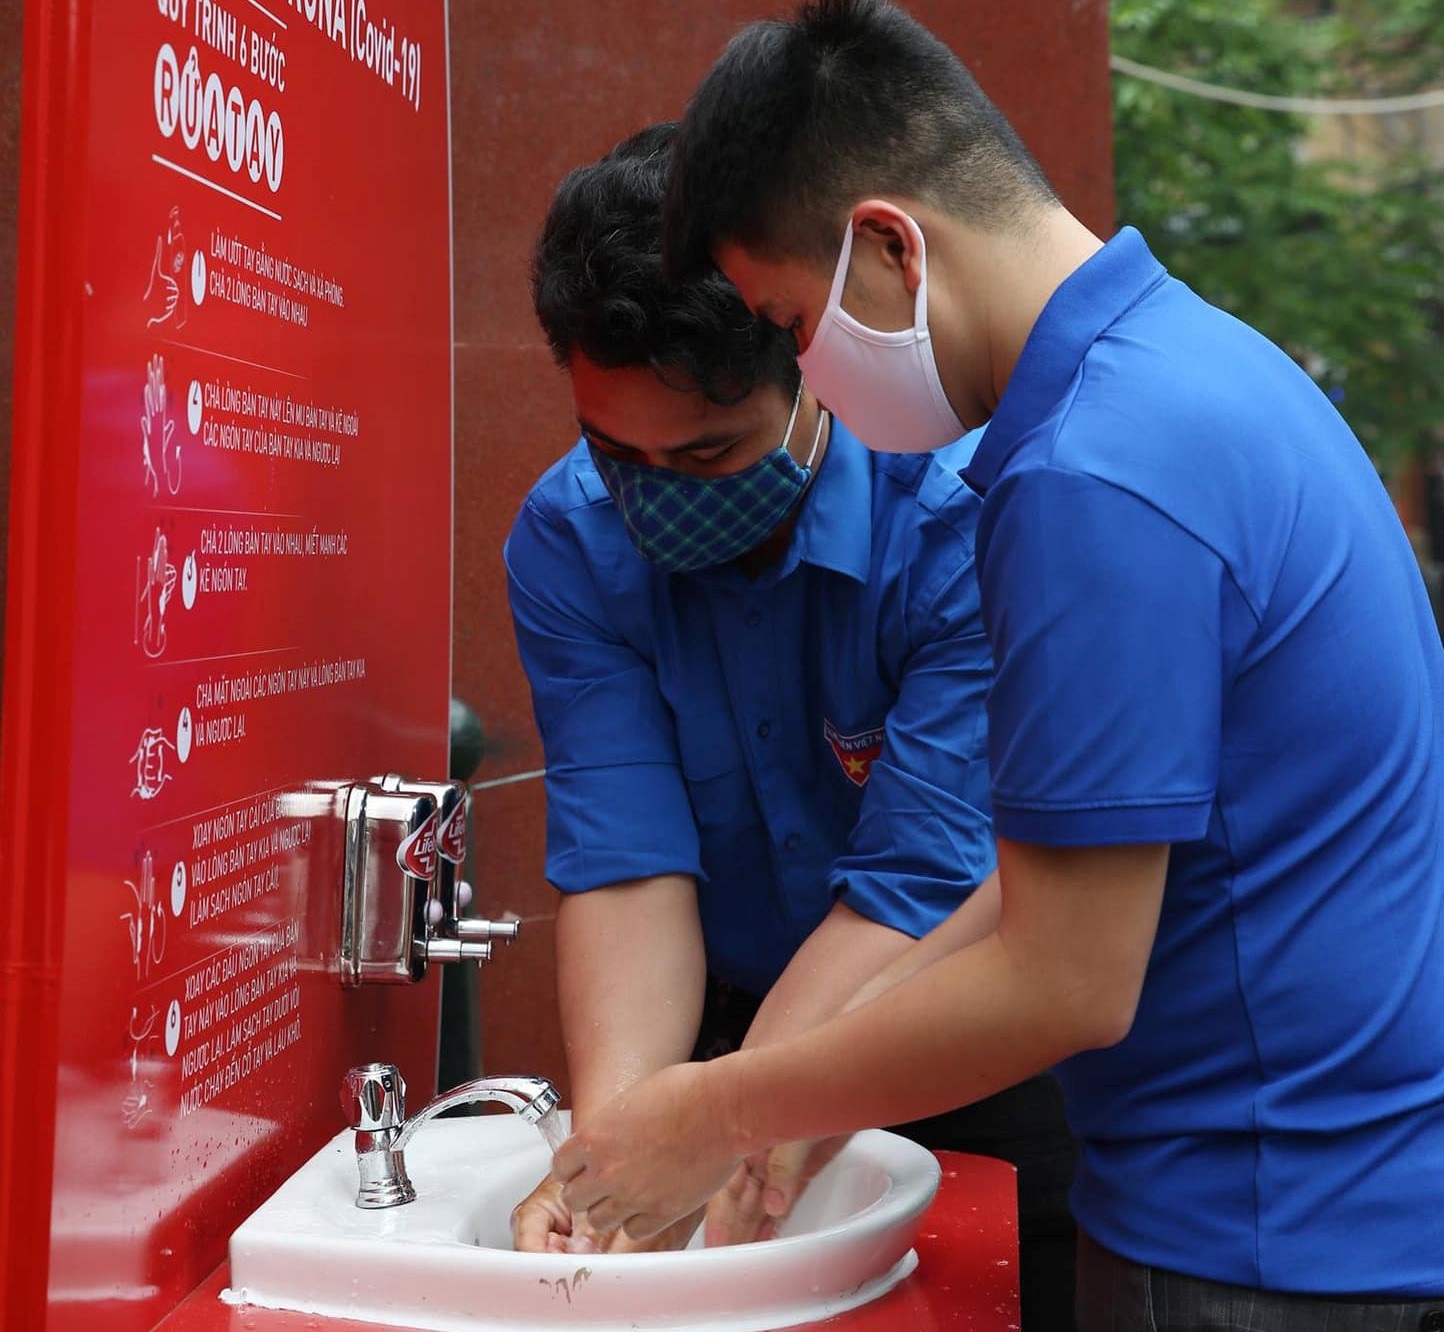 Thanh niên Hà Nội tích cực hỗ trợ khu cách ly, lắp 100 bồn rửa tay miễn phí - 9